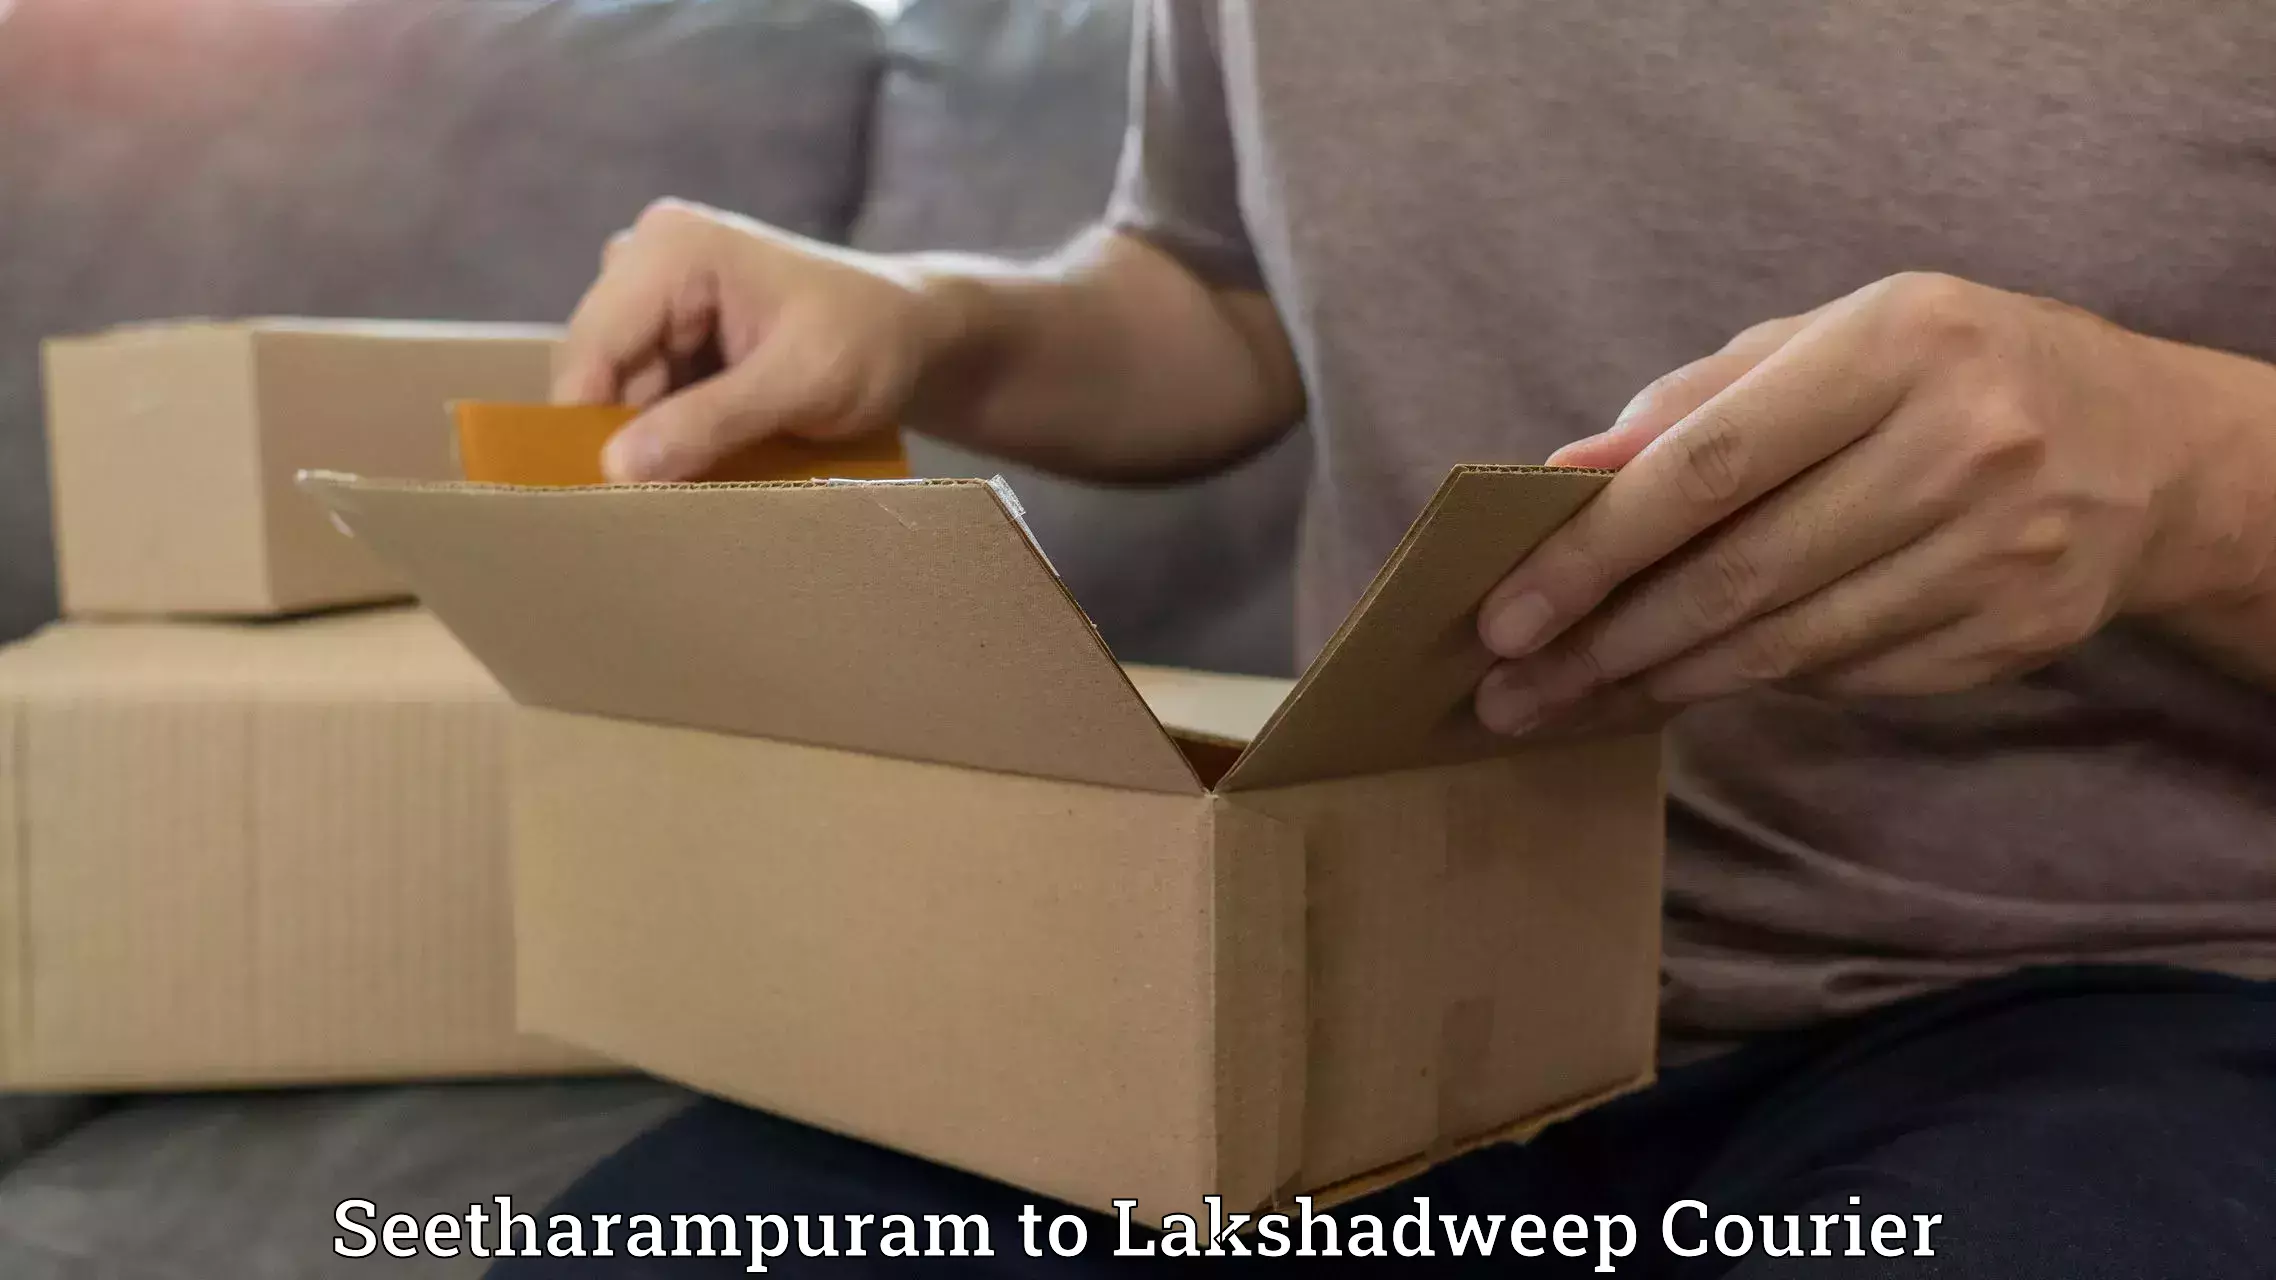 High-capacity shipping options Seetharampuram to Lakshadweep